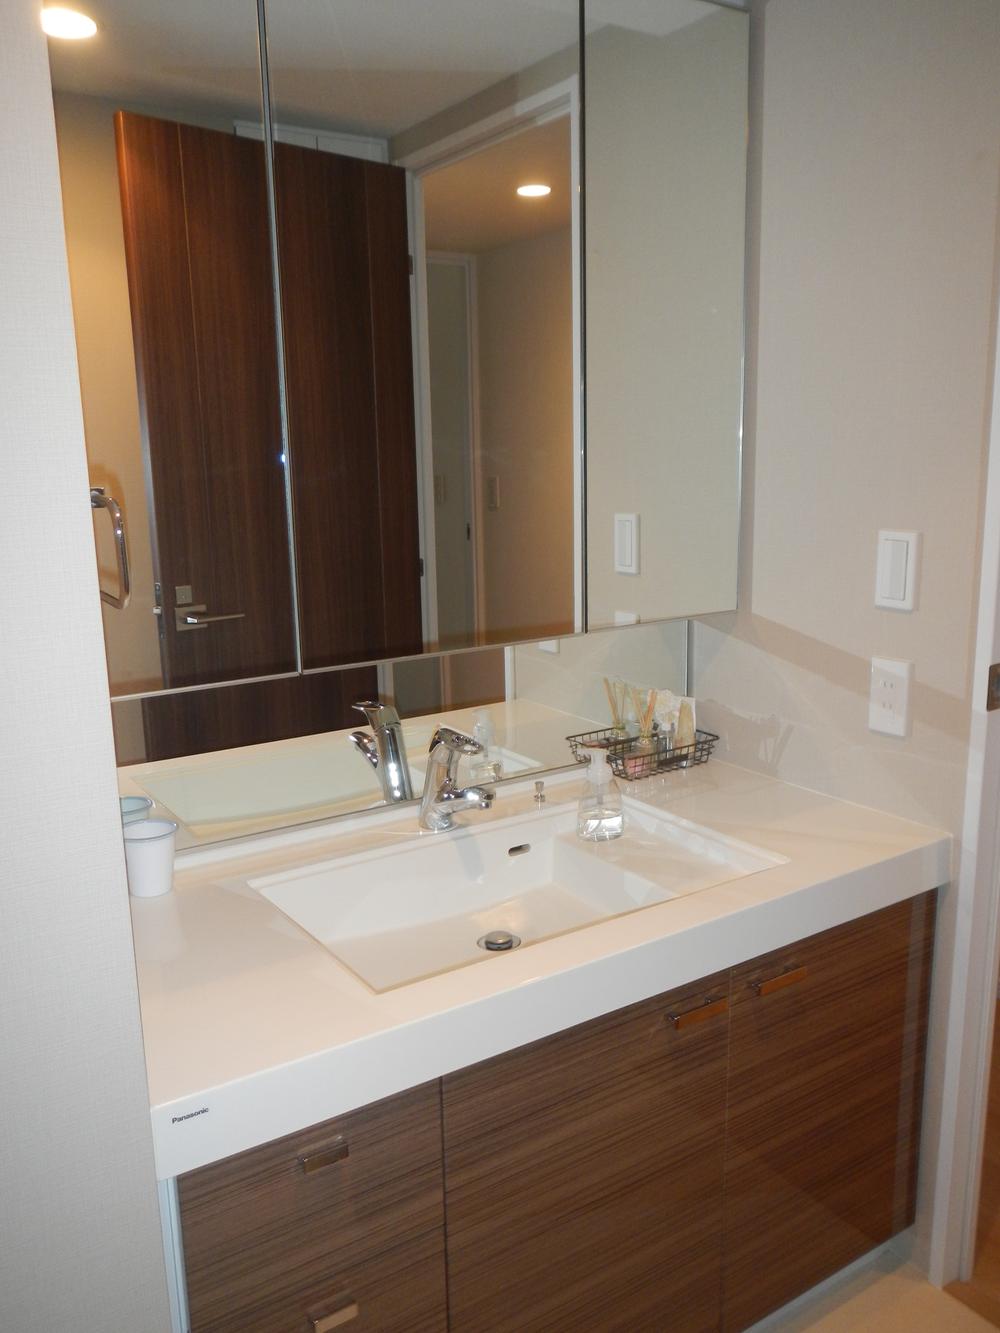 Wash basin, toilet. Vanity triple mirror housing